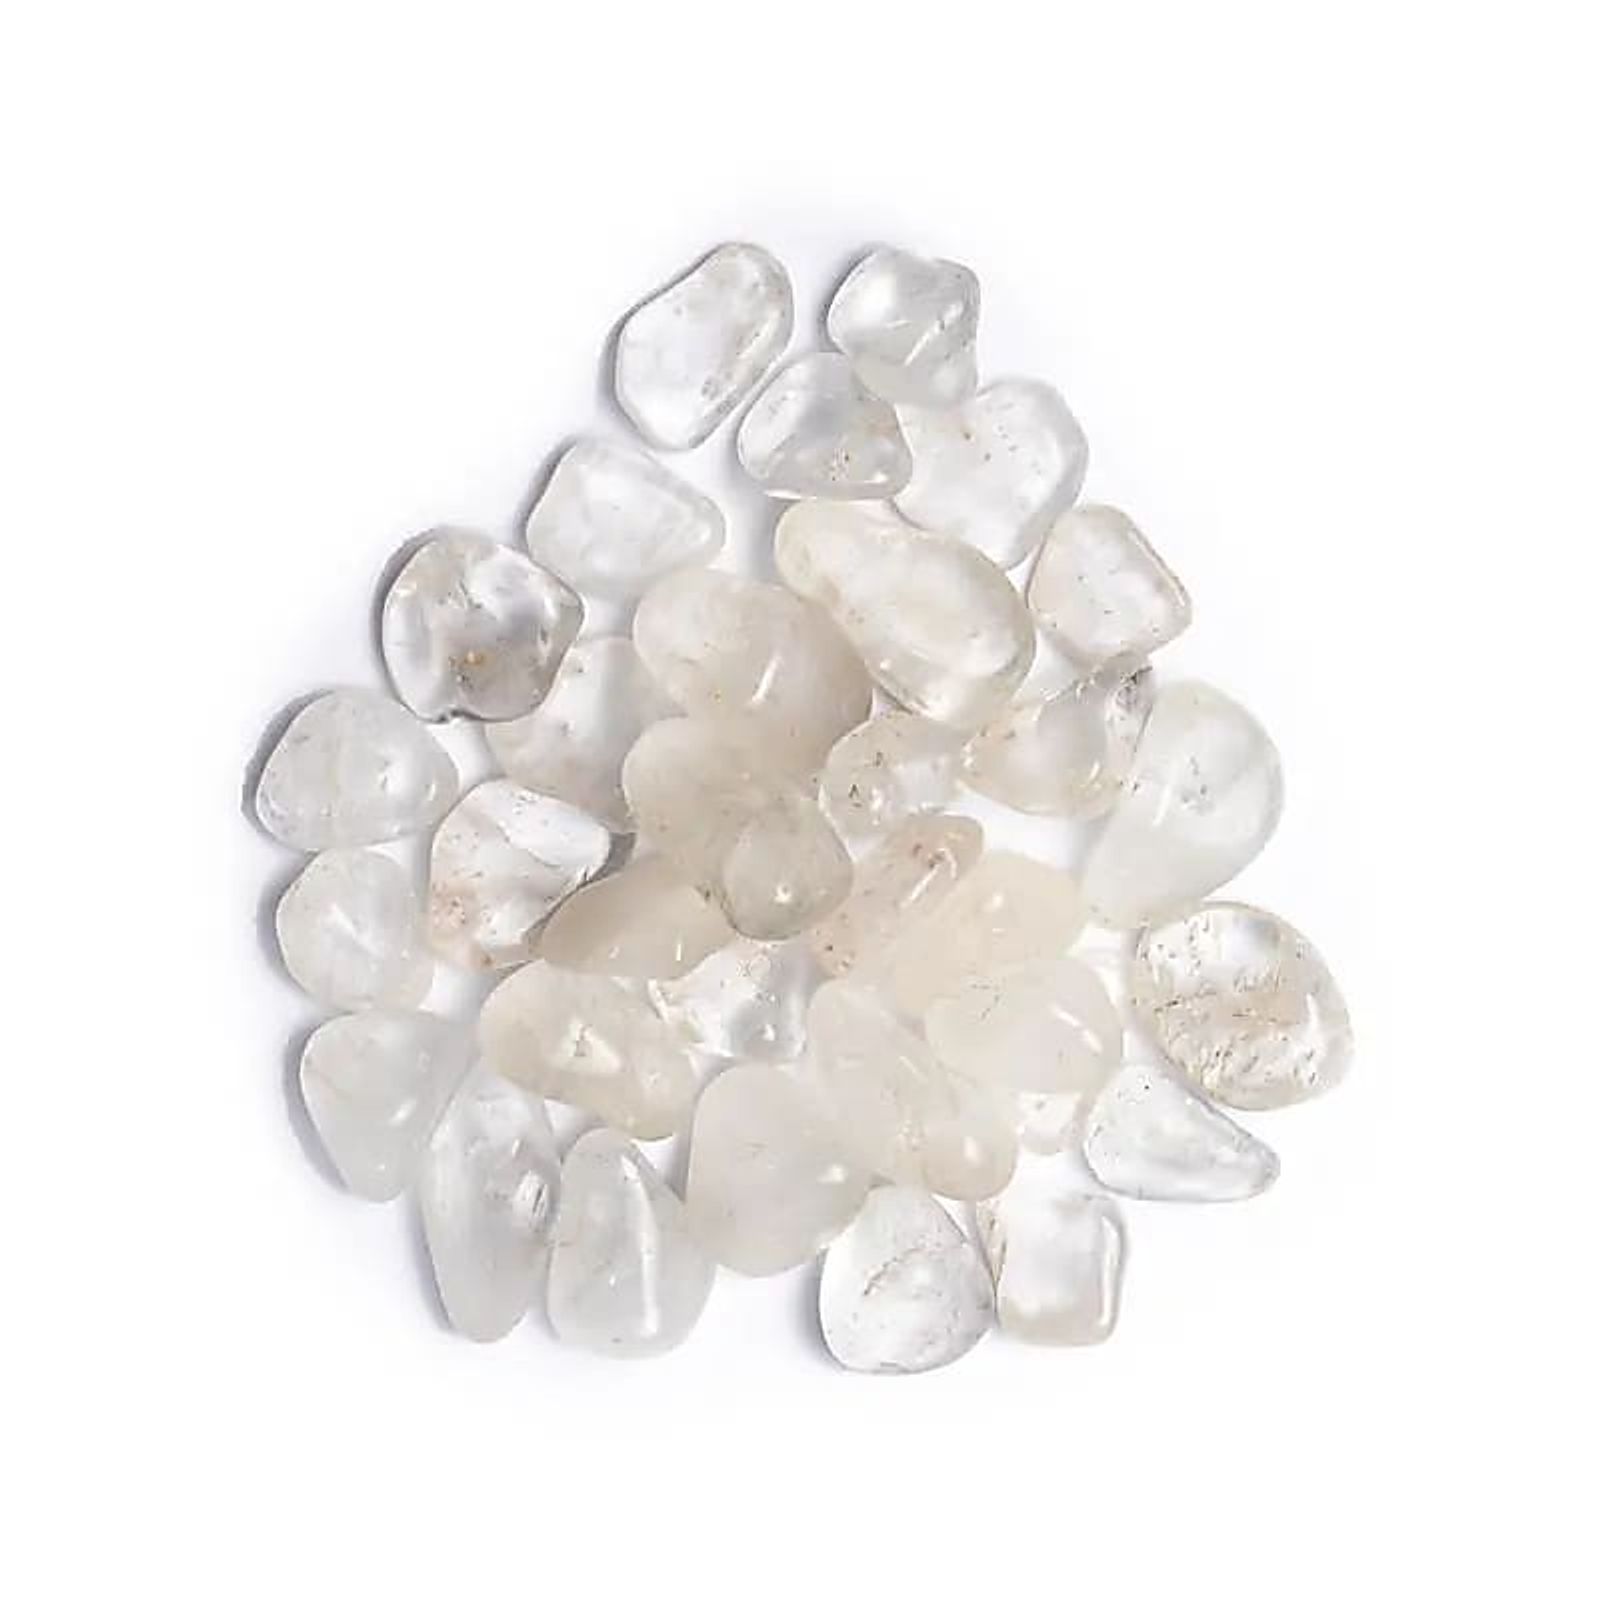 Bergkristall Trommelsteine A Qualität -- ±1000g; ±2-3cm